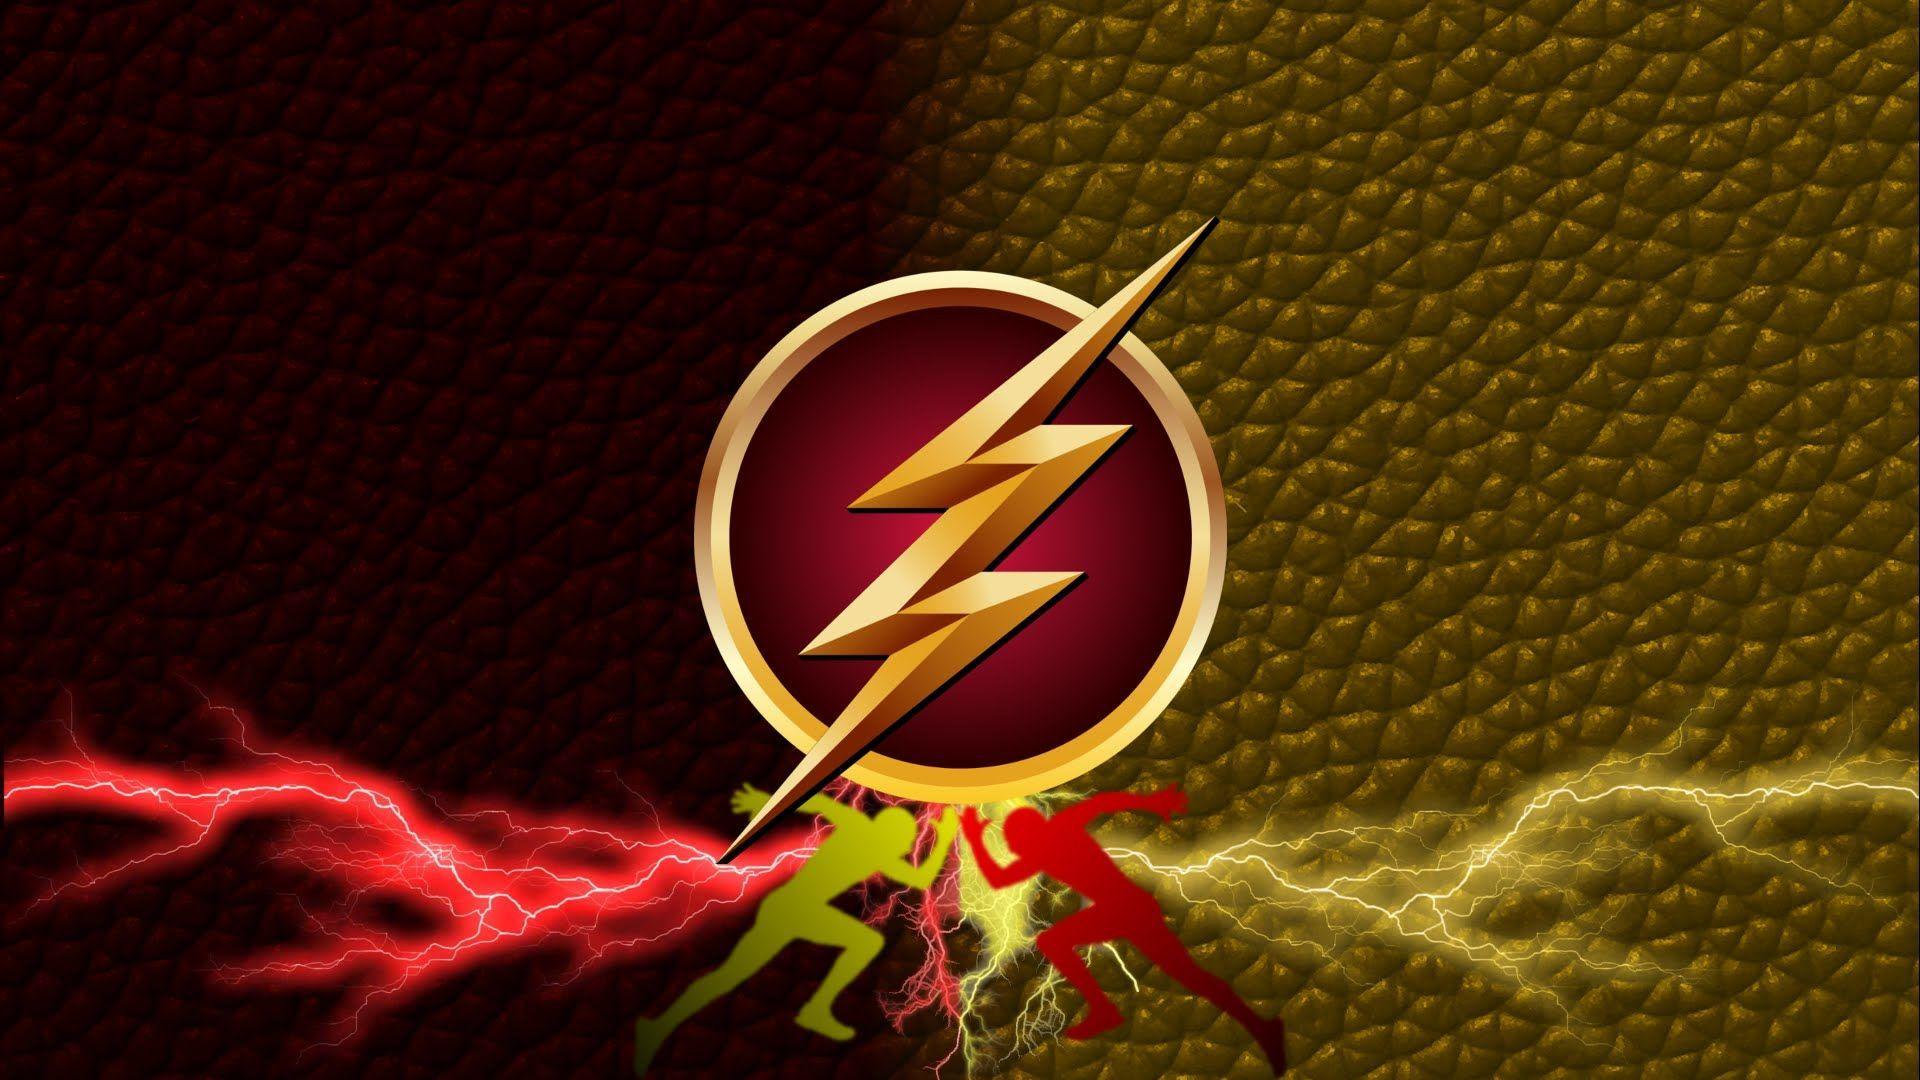 The Flash Background. The Flash Background Speed Art